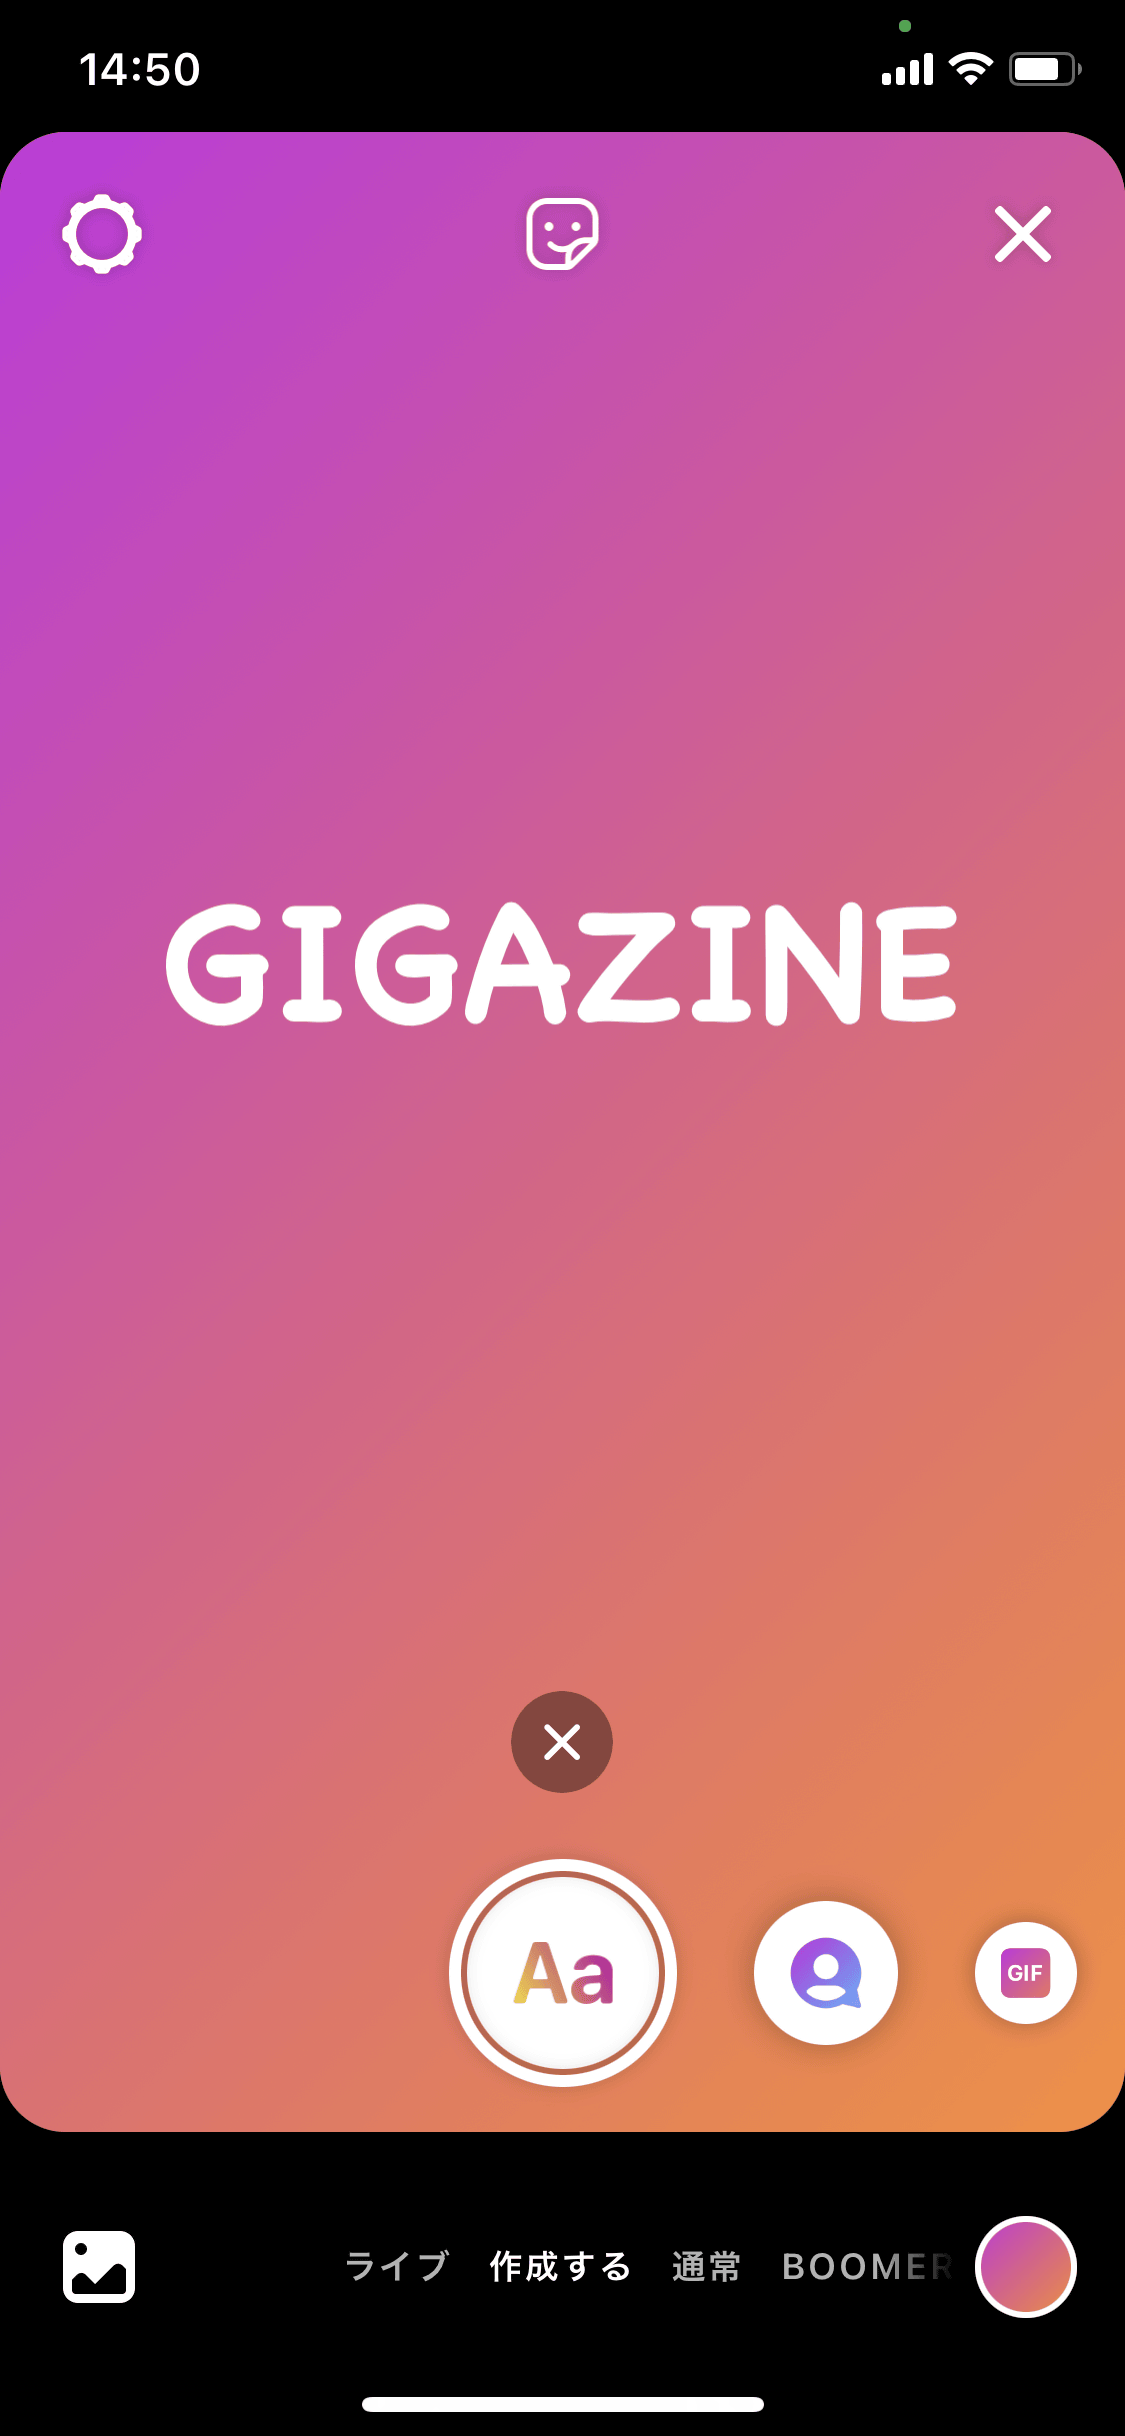 Instagramに追加されたフォントが 世界で最も嫌われているフォント にそっくりだと話題に Gigazine